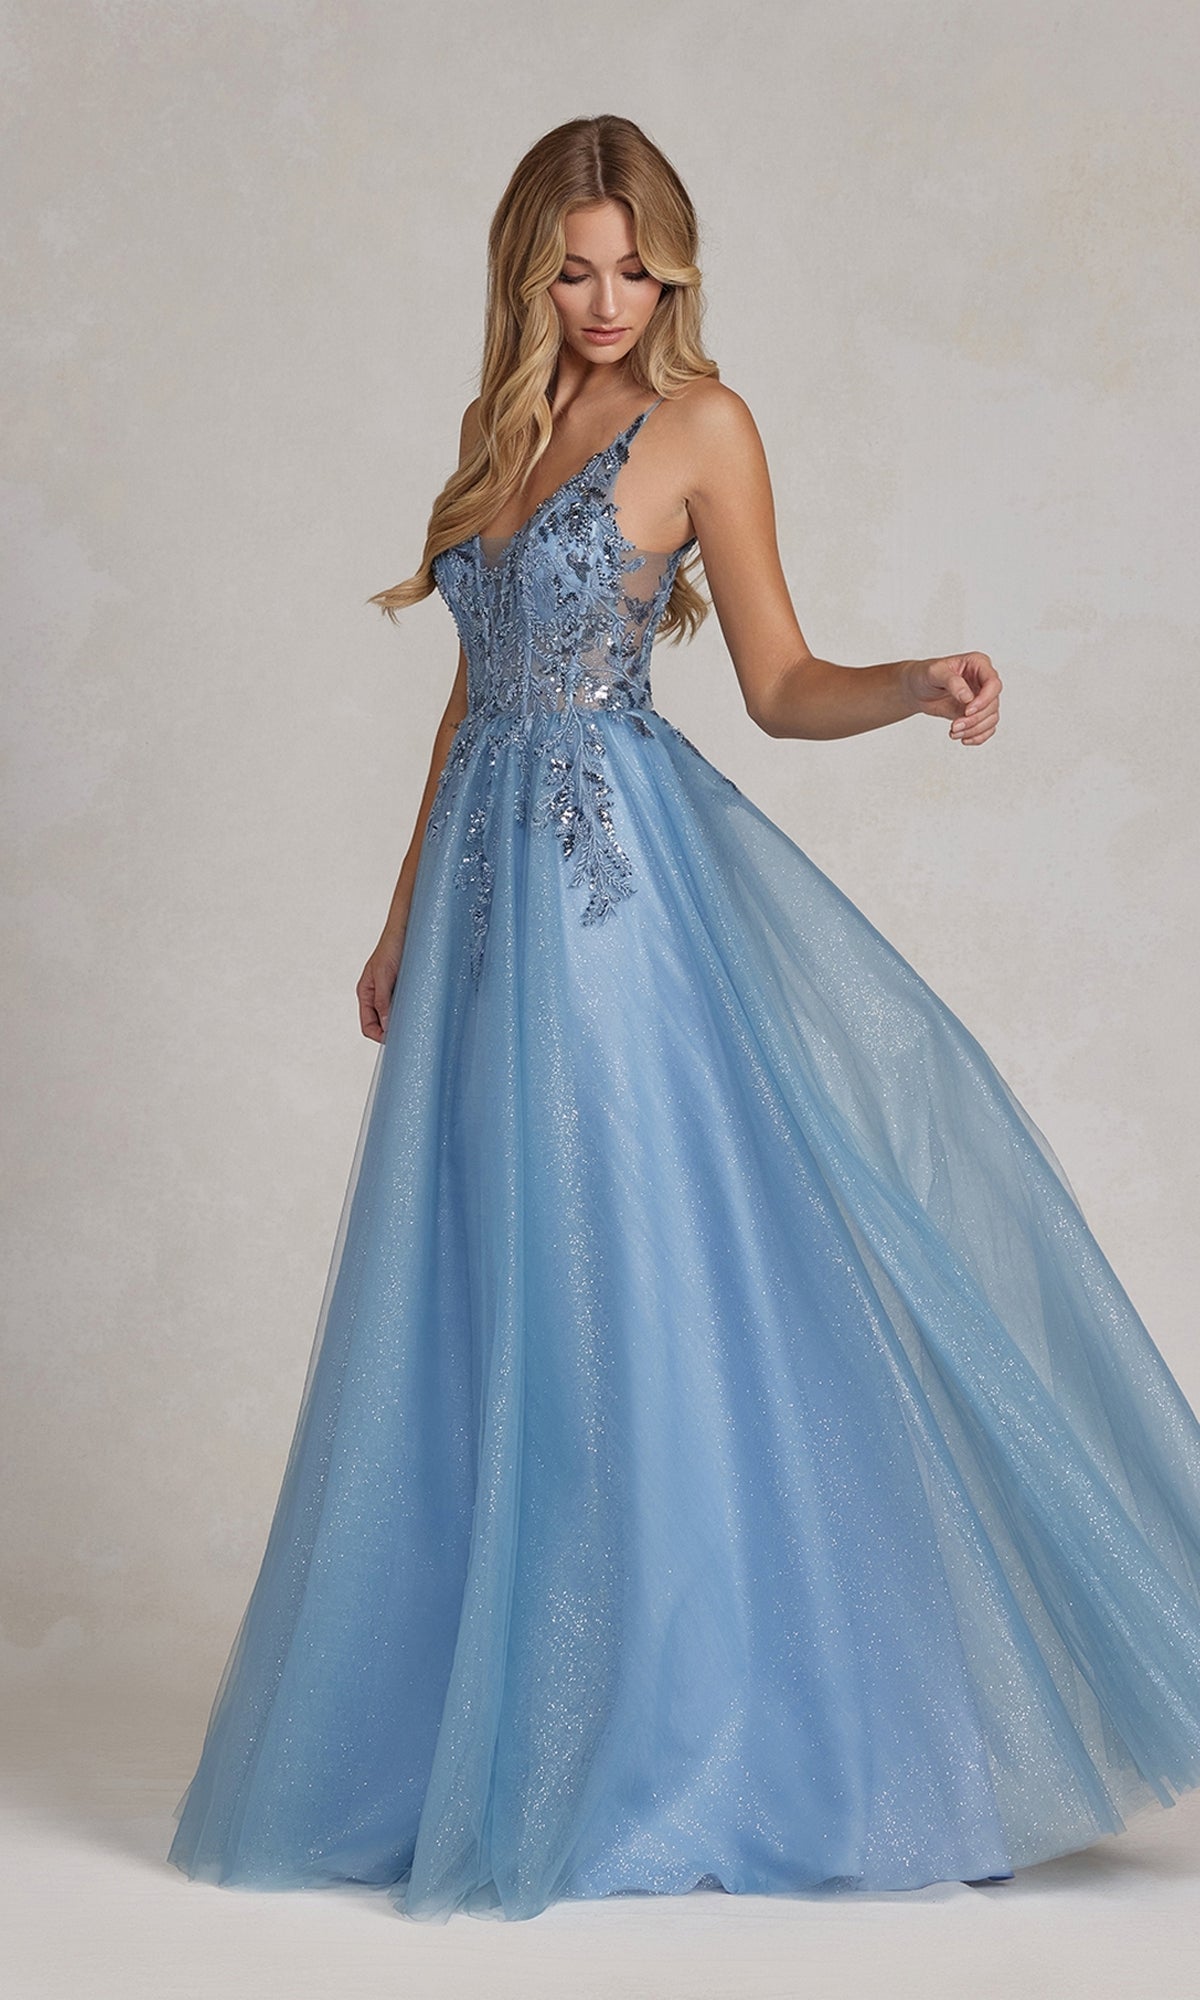 Dusty Blue Glitter-Tulle Dusty Blue Long Prom Ball Gown E1125